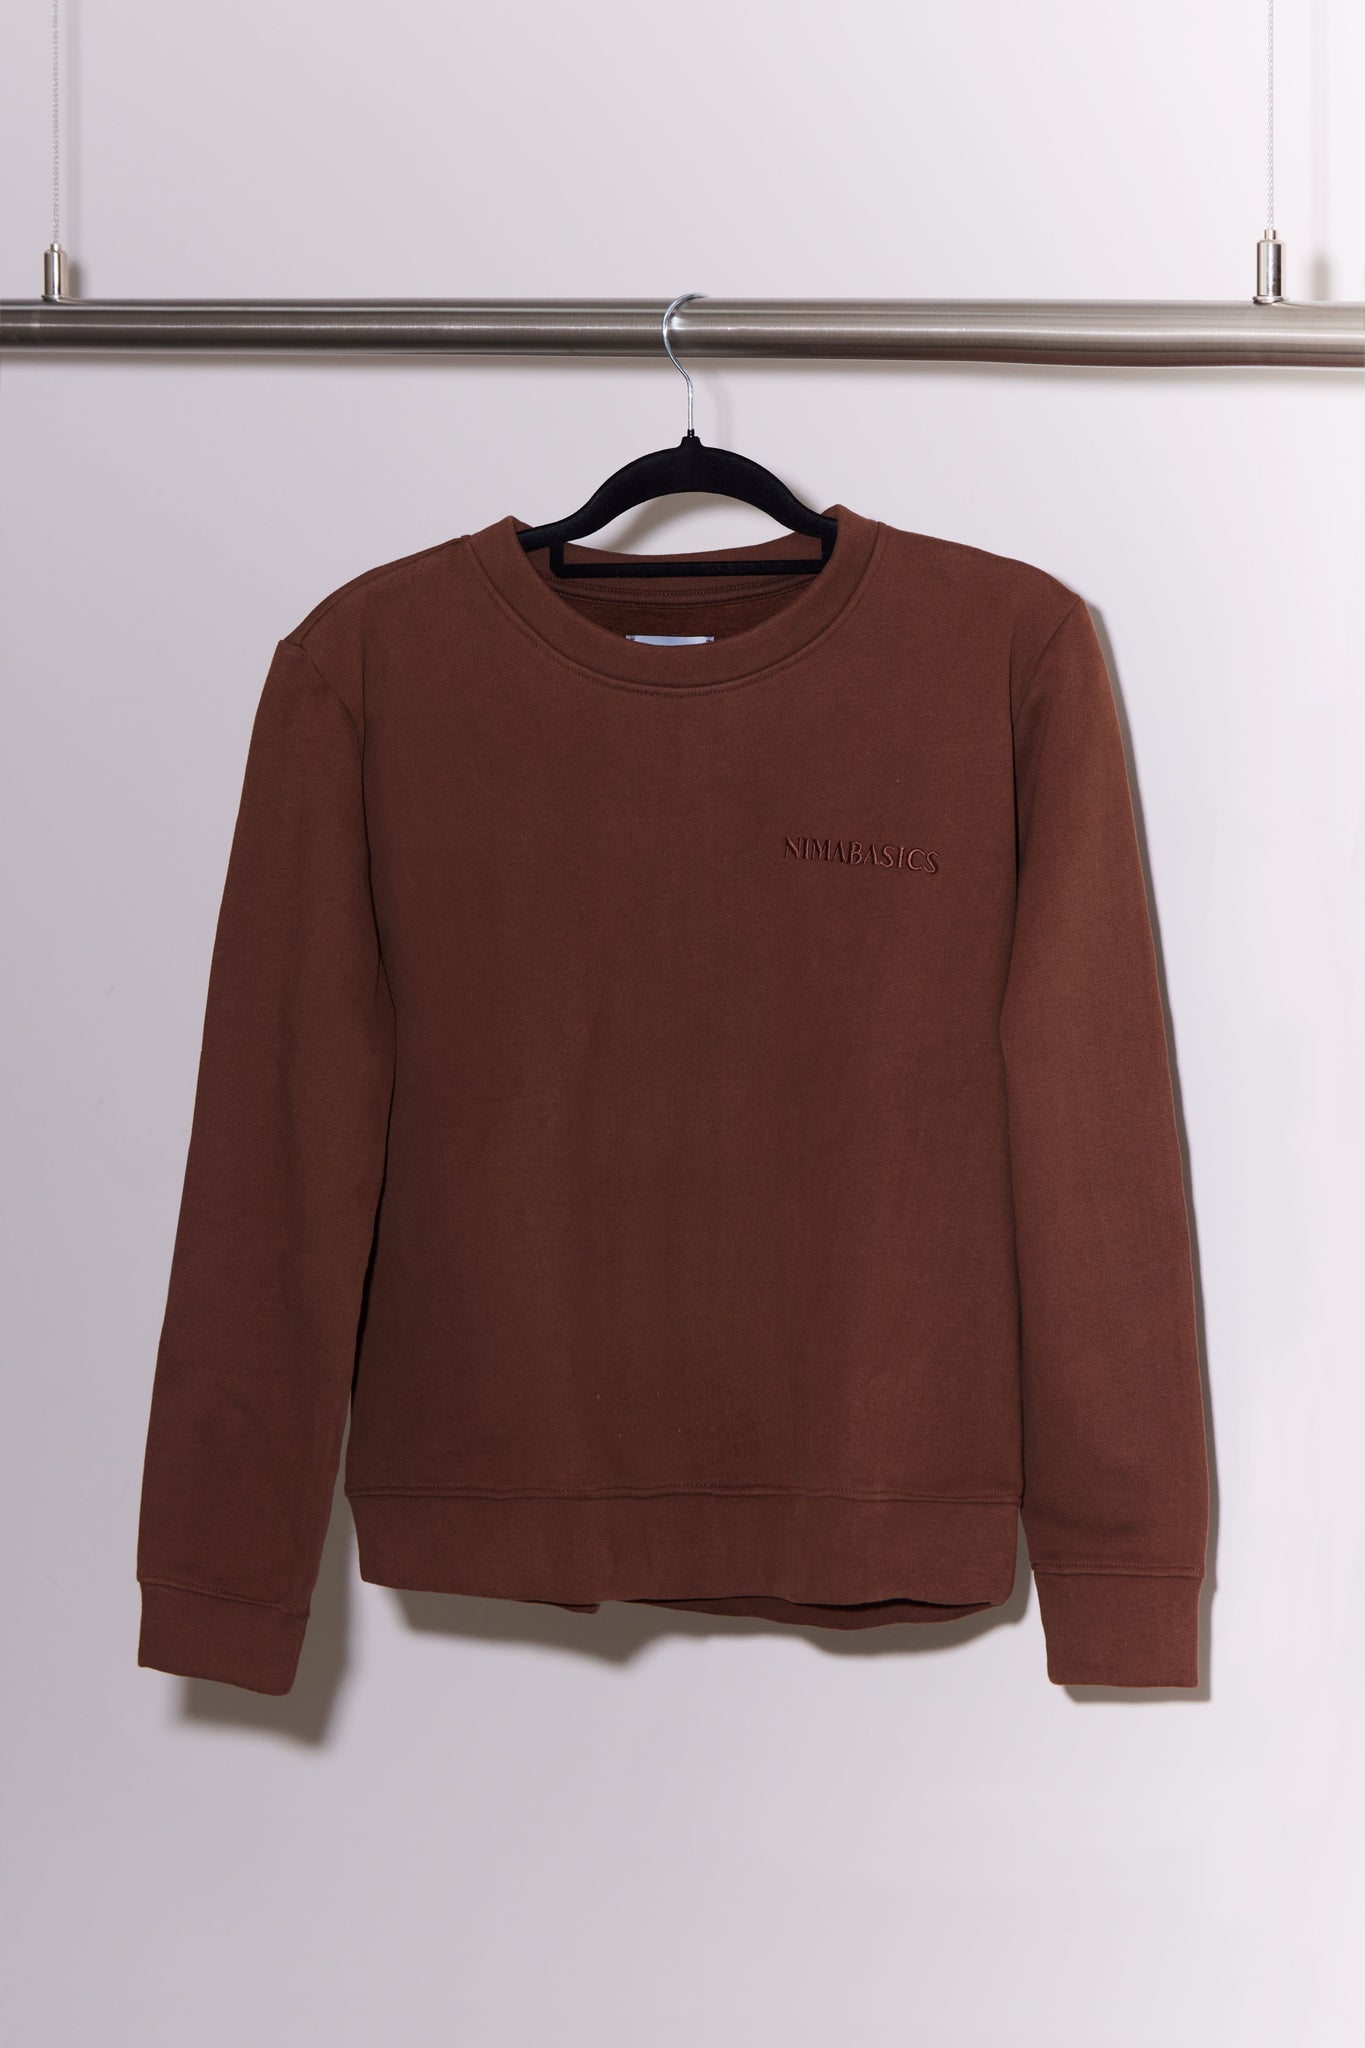 Brauner Sweater hängt an Kleiderstange